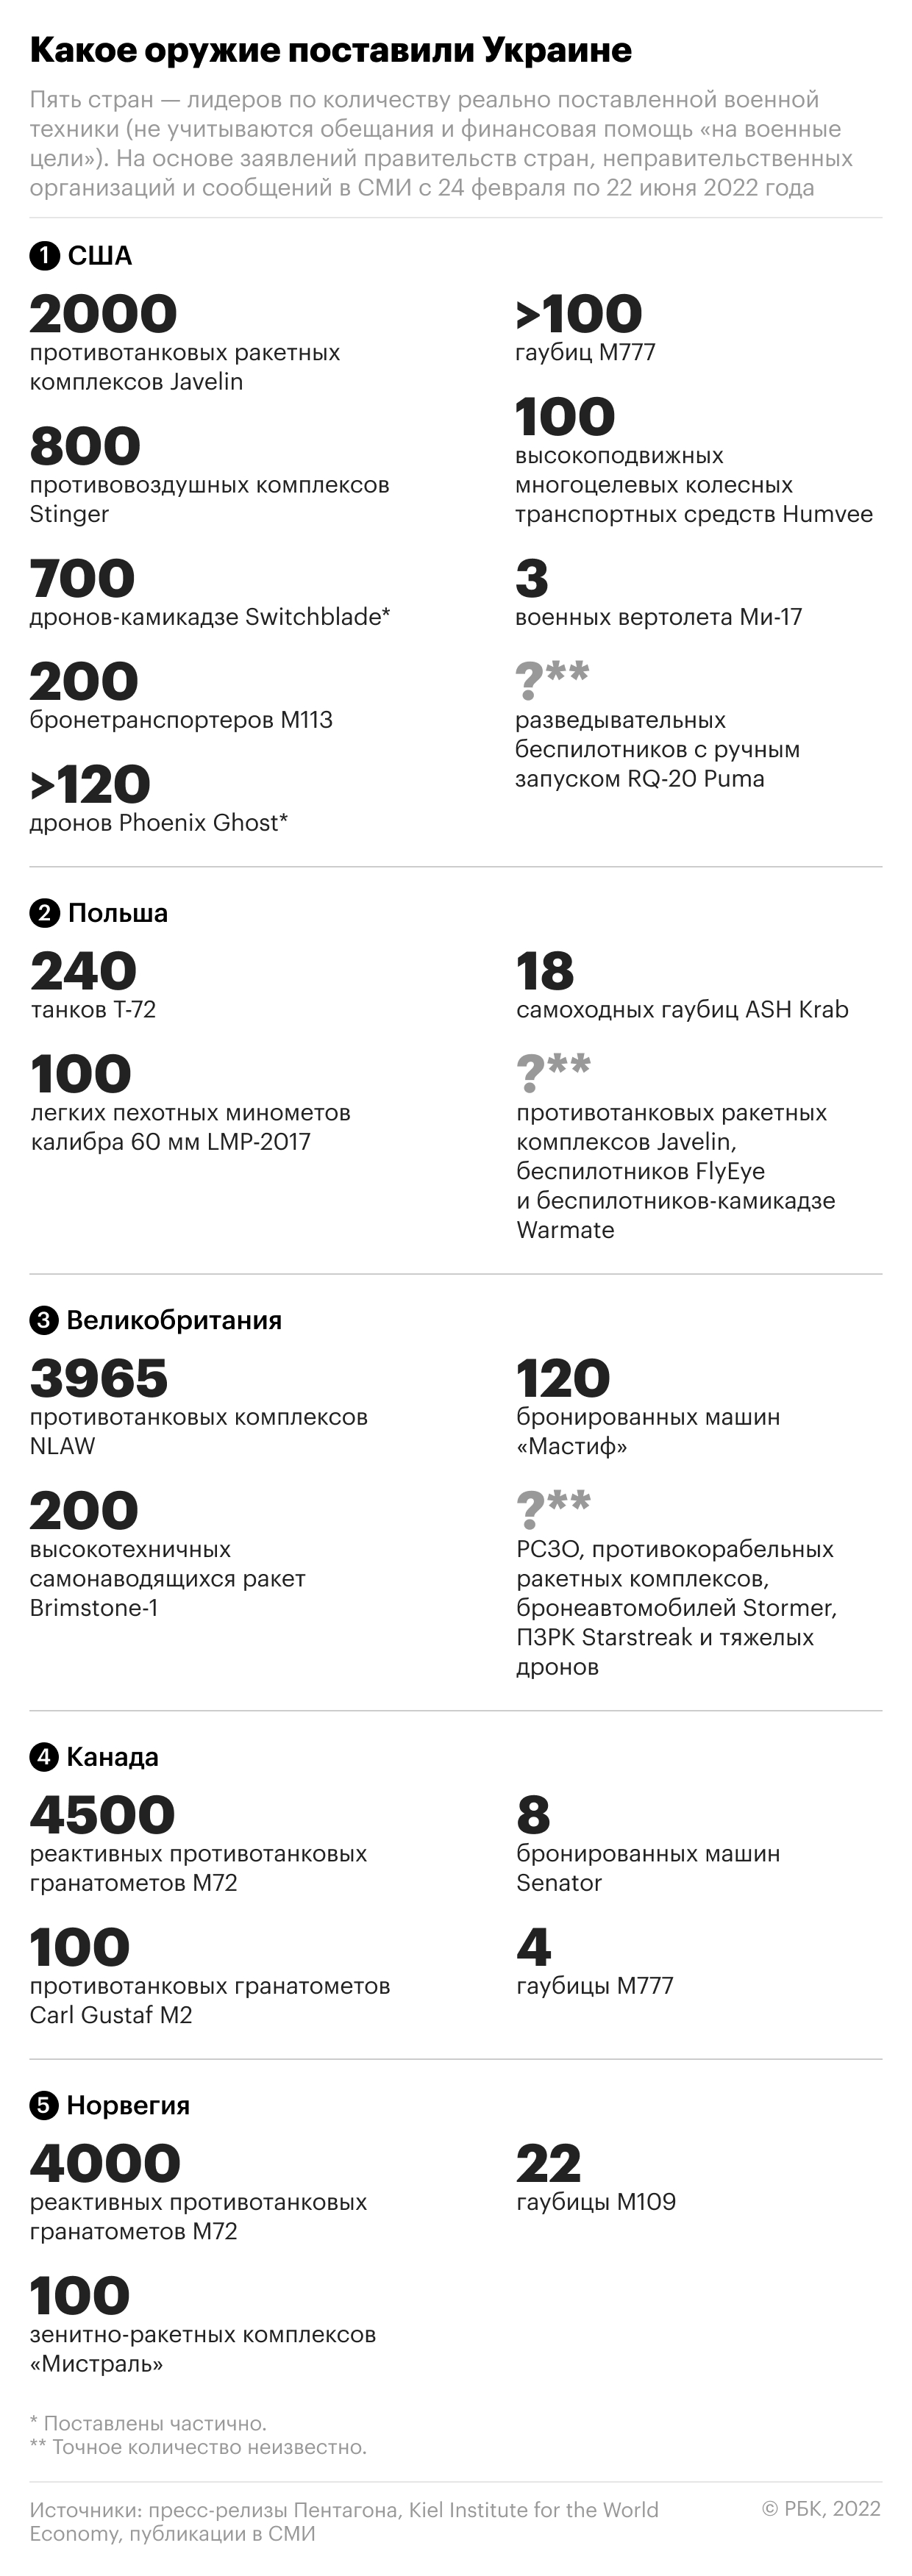 Чем воюет Украина: сколько и какого оружия получил Киев от Запада"/>













